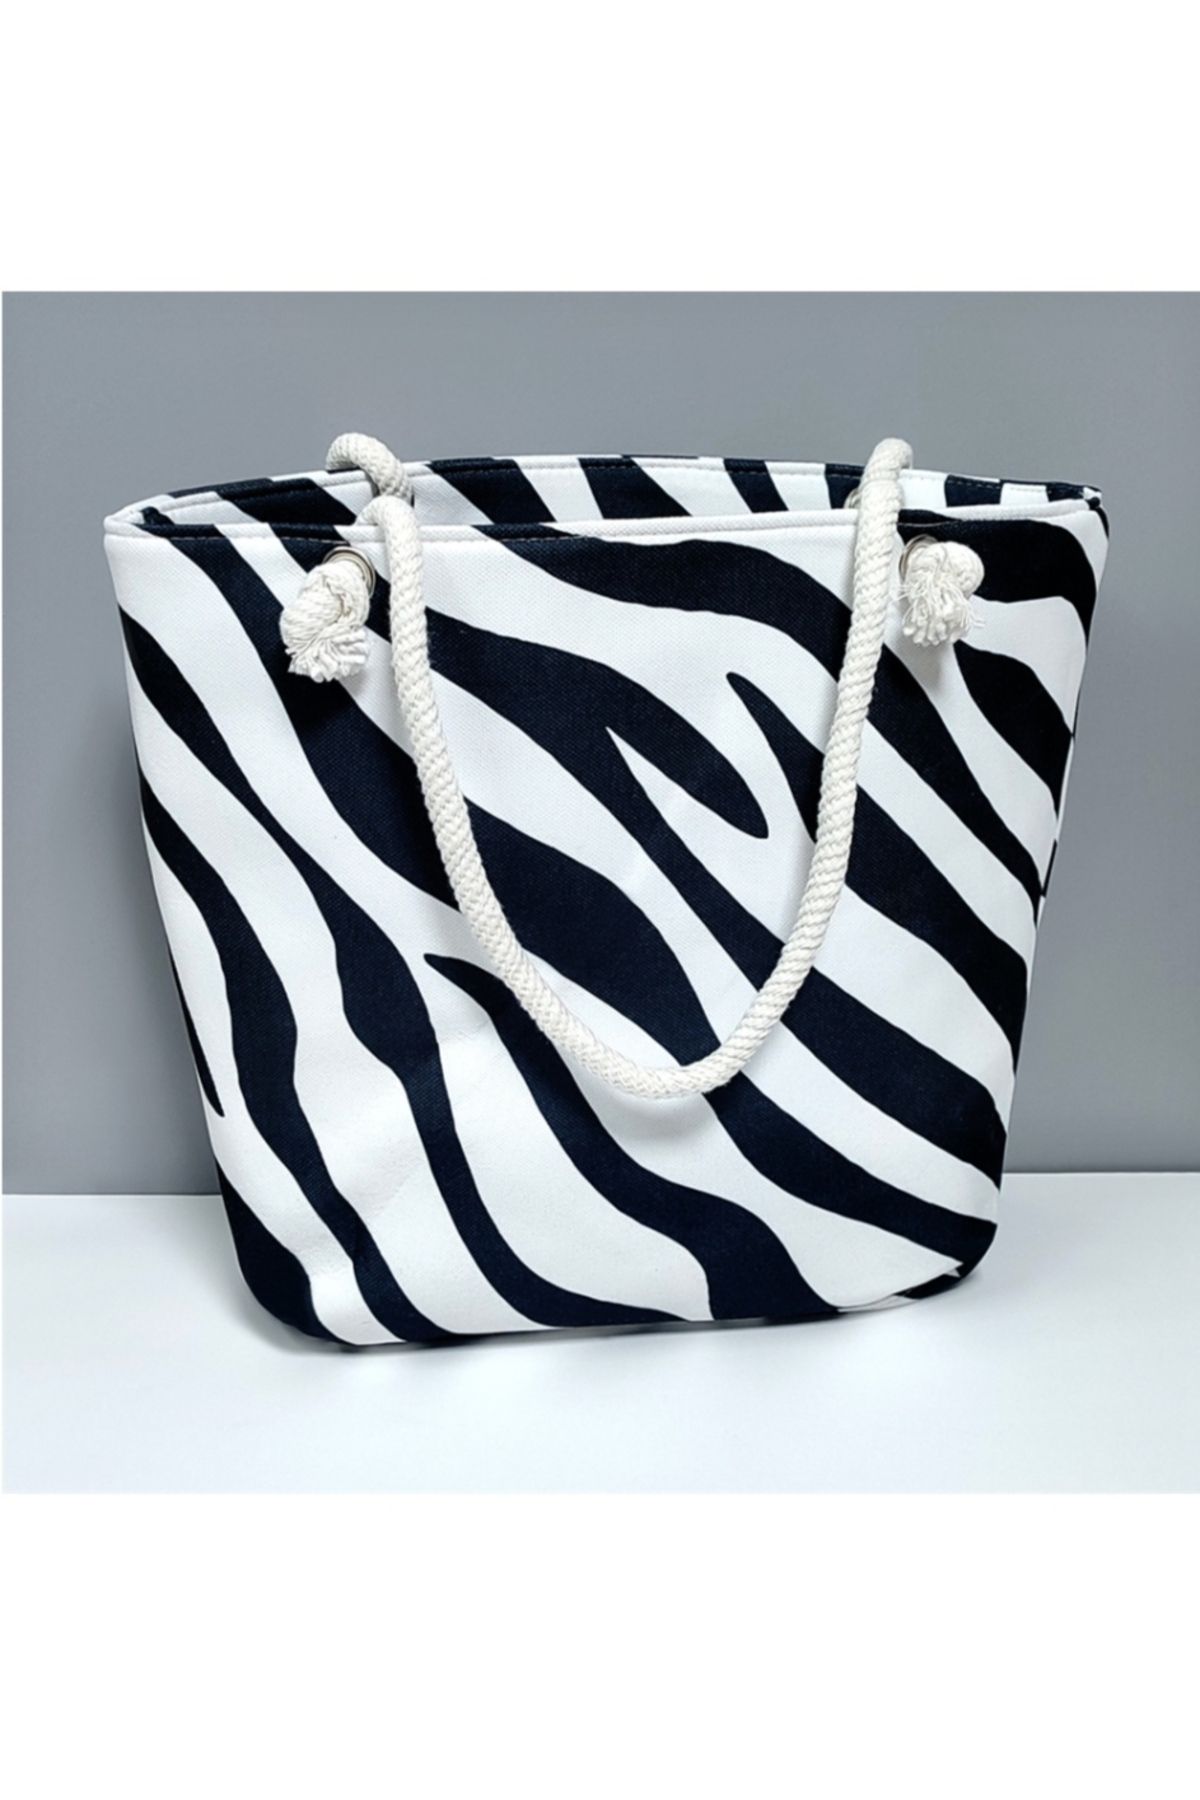 Genel Markalar Zebra desenli plaj çantası